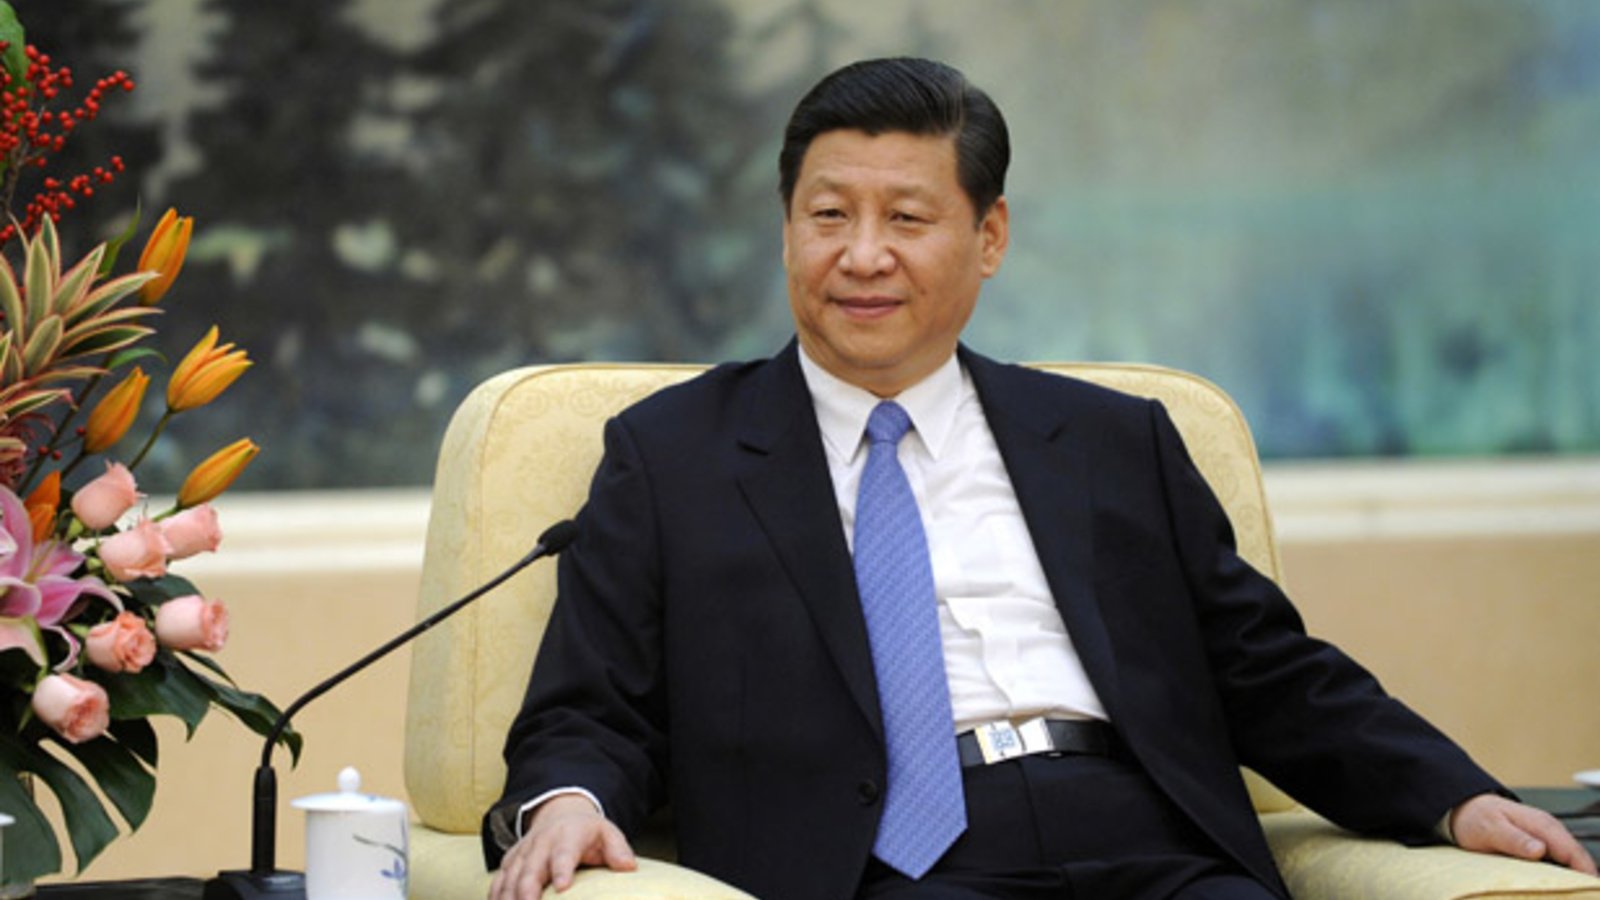 તાઇવાનની સમસ્યાઓ વધશે, ચીનના રાષ્ટ્રપતિ શી જિનપિંગનો ત્રીજા કાર્યકાળનો માર્ગ થયો મોકળો